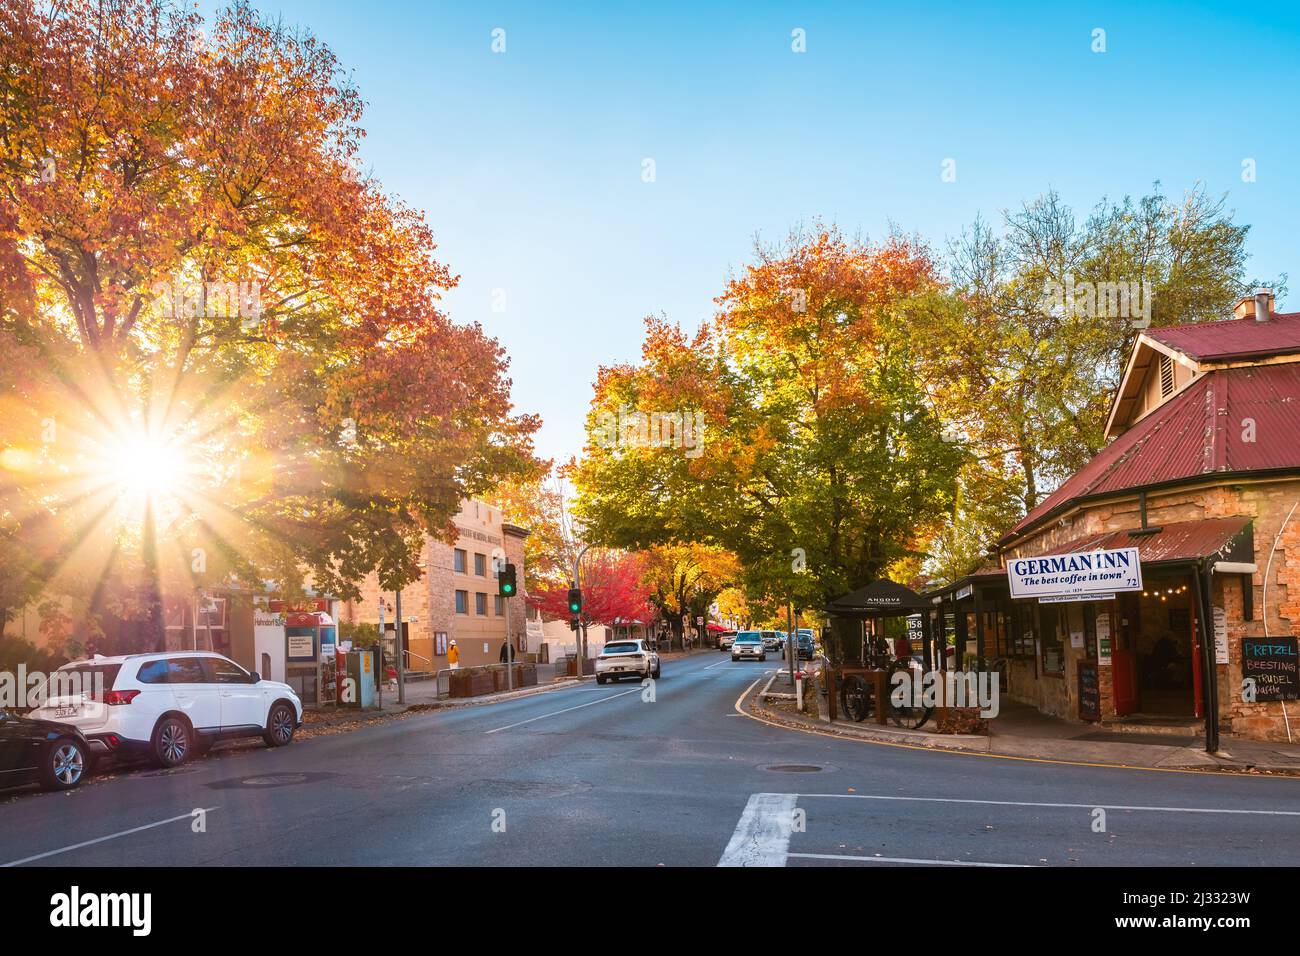 Adelaide Hills, Australie méridionale - 24 avril 2021 : Hahndorf vue sur la rue principale avec voitures et café allemand Inn pendant la saison d'automne à l'heure du coucher du soleil Banque D'Images